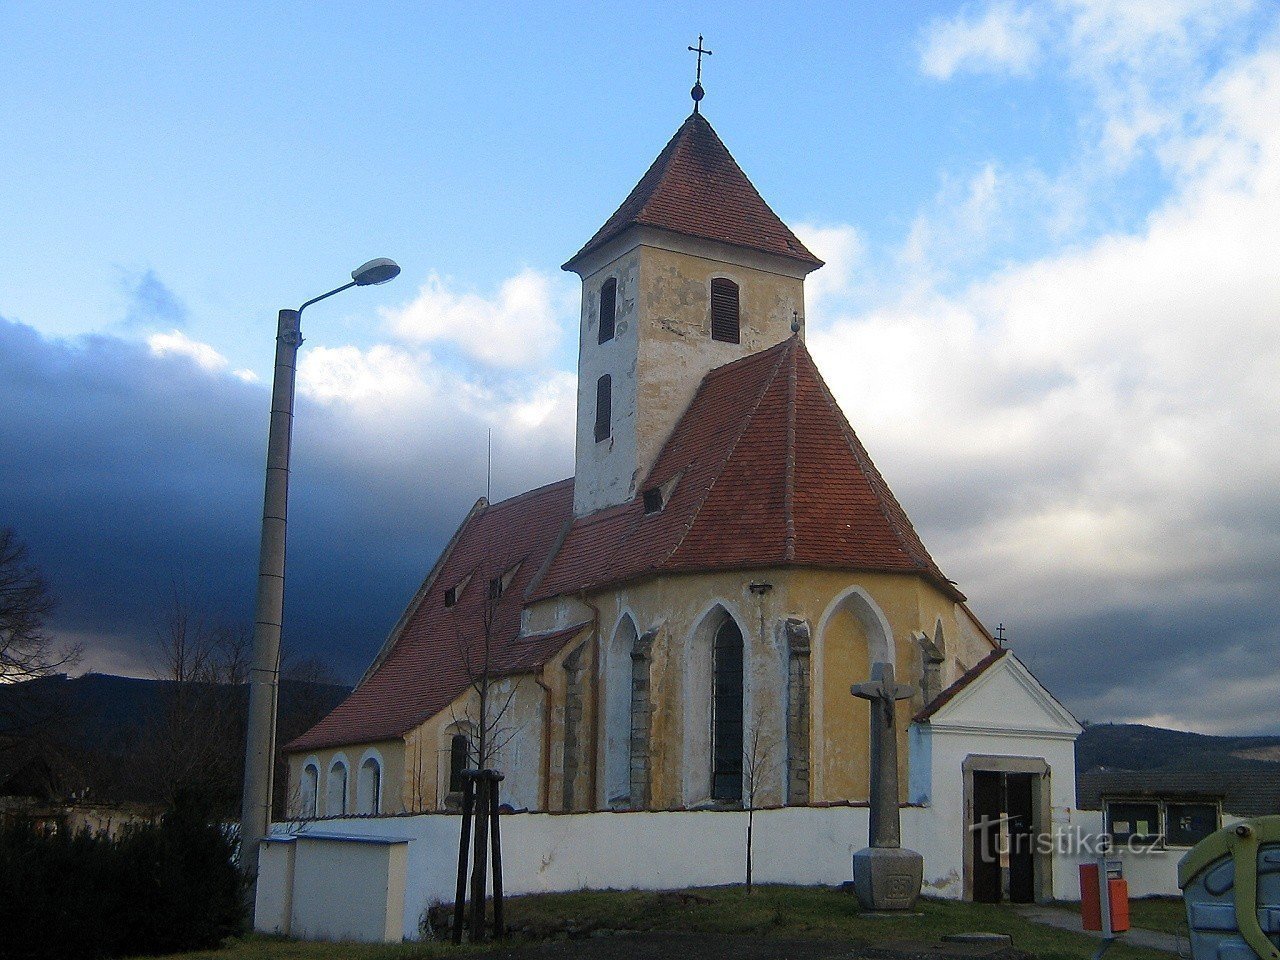 Kerk van St. Maria Magdalena uit het zuidoosten